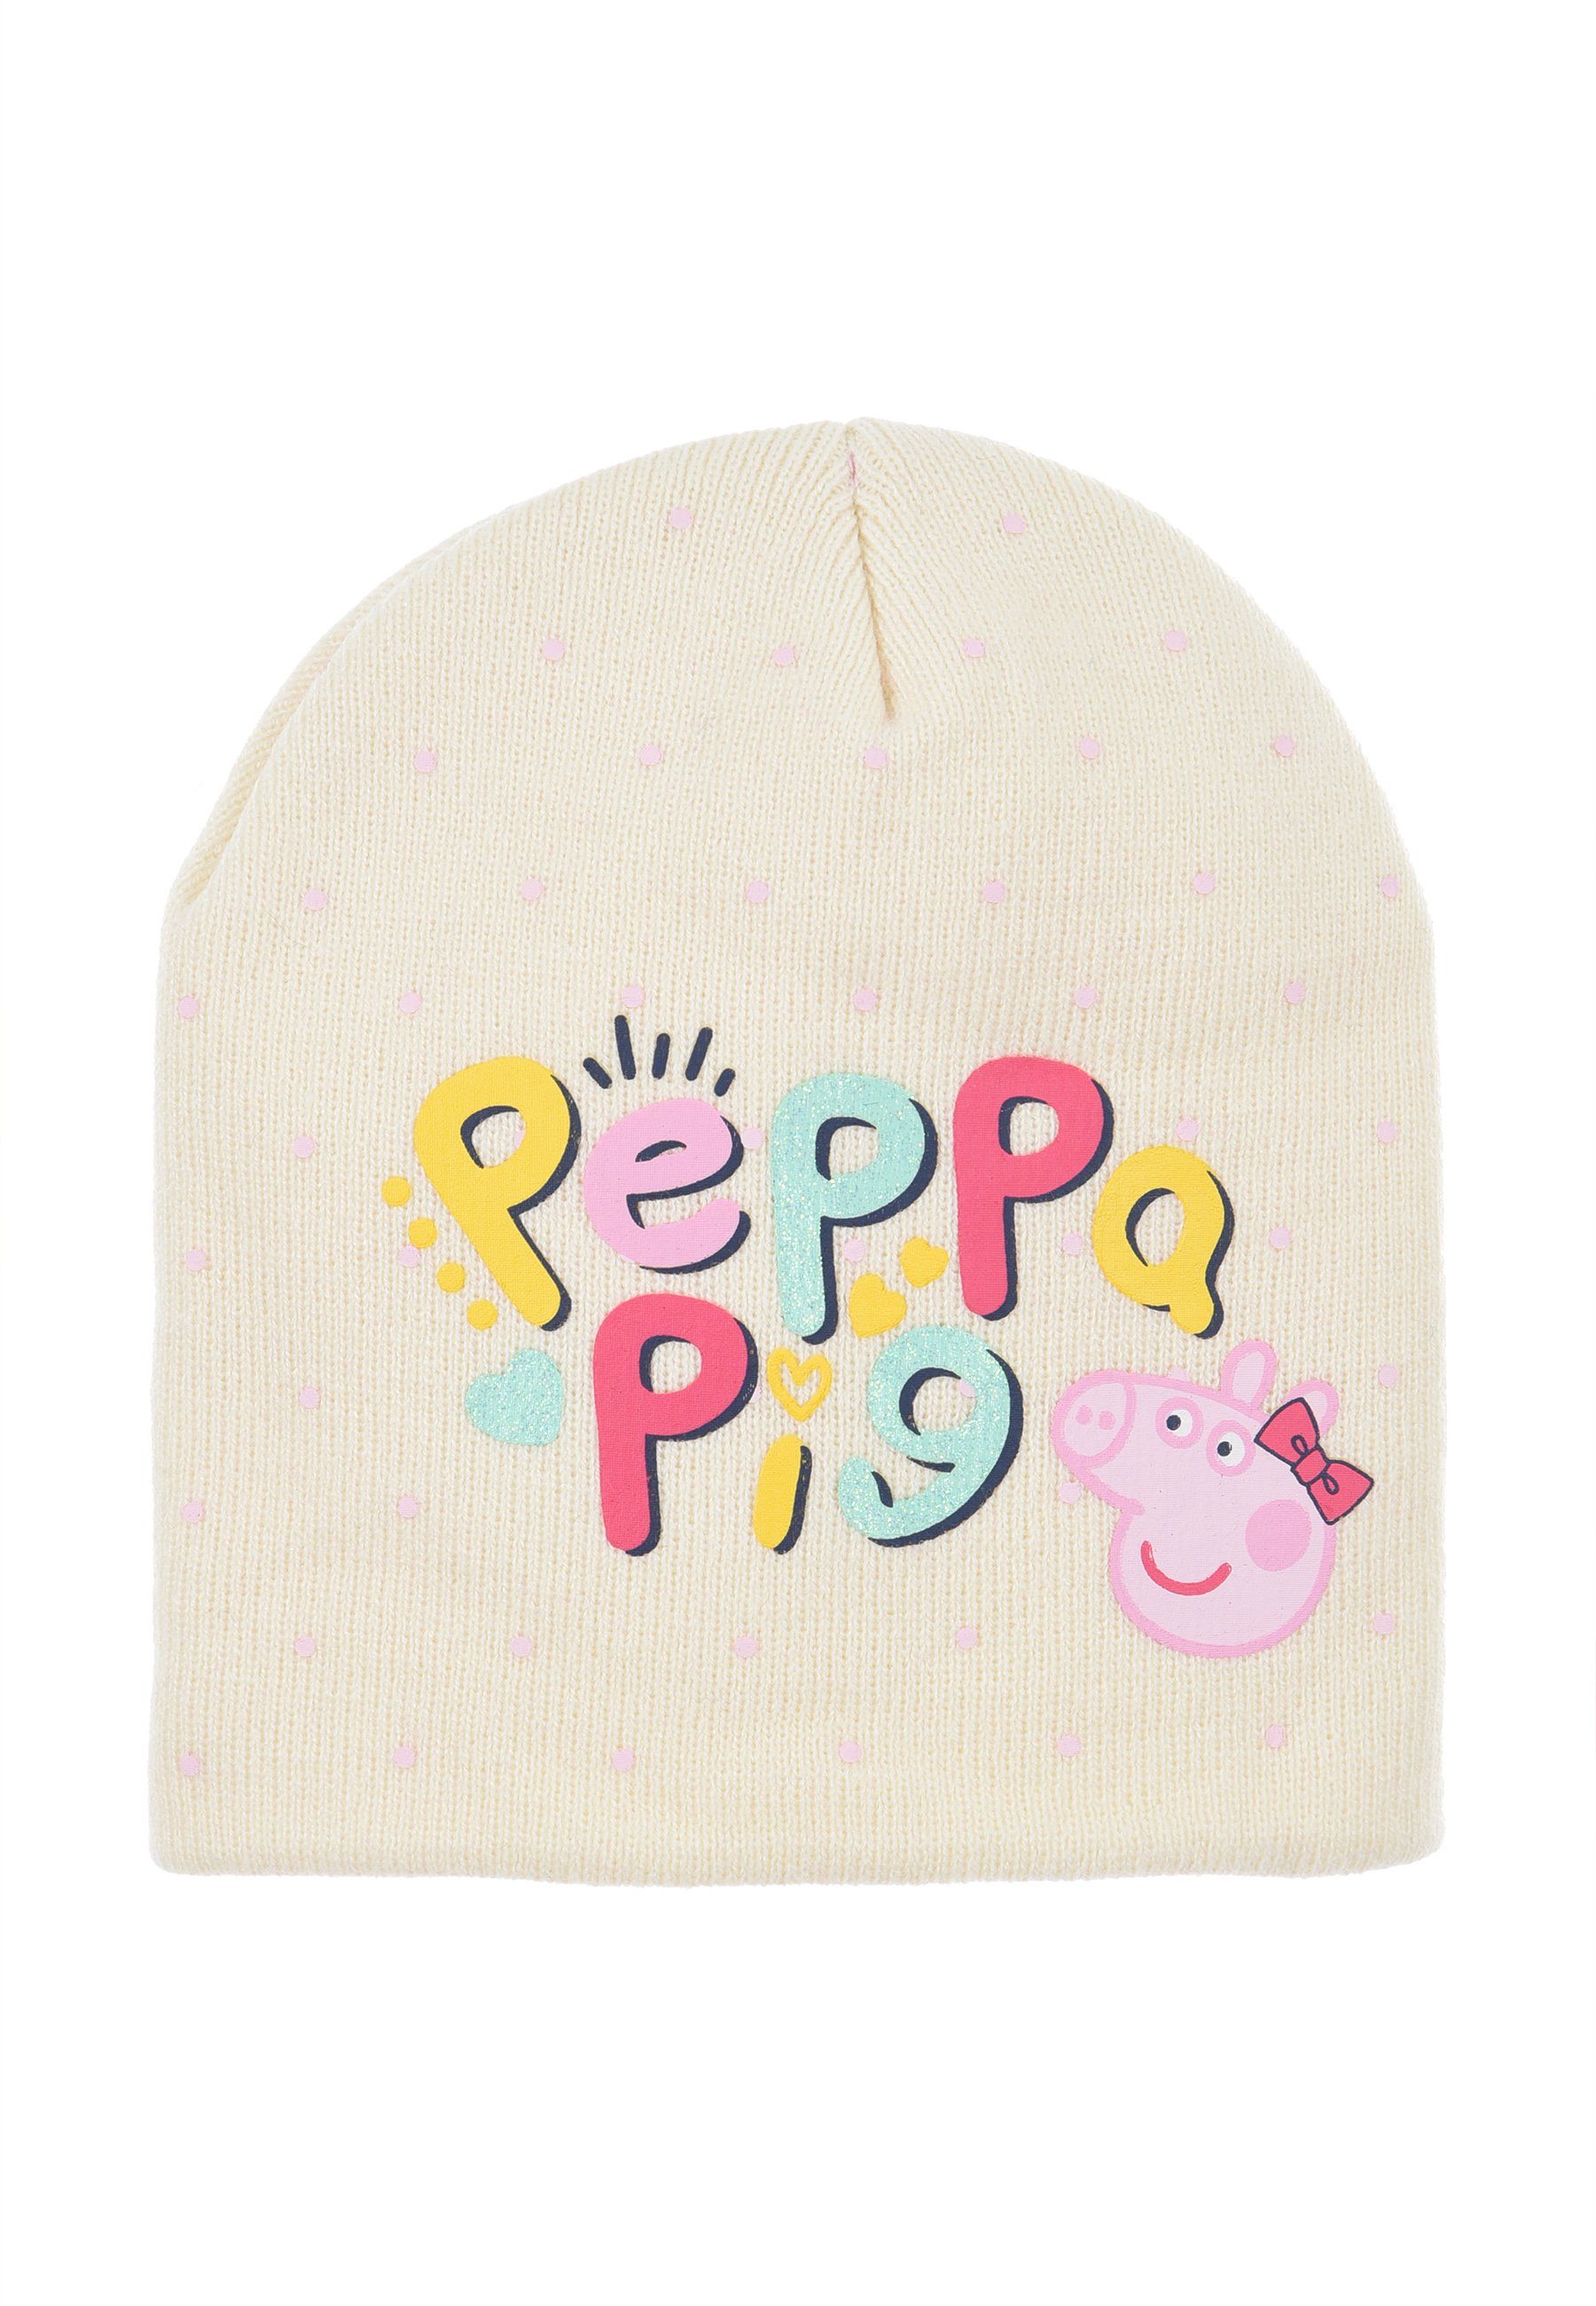 Peppa Pig Beanie Peppa Wutz Weiß Kinder Mädchen Winter-Mütze